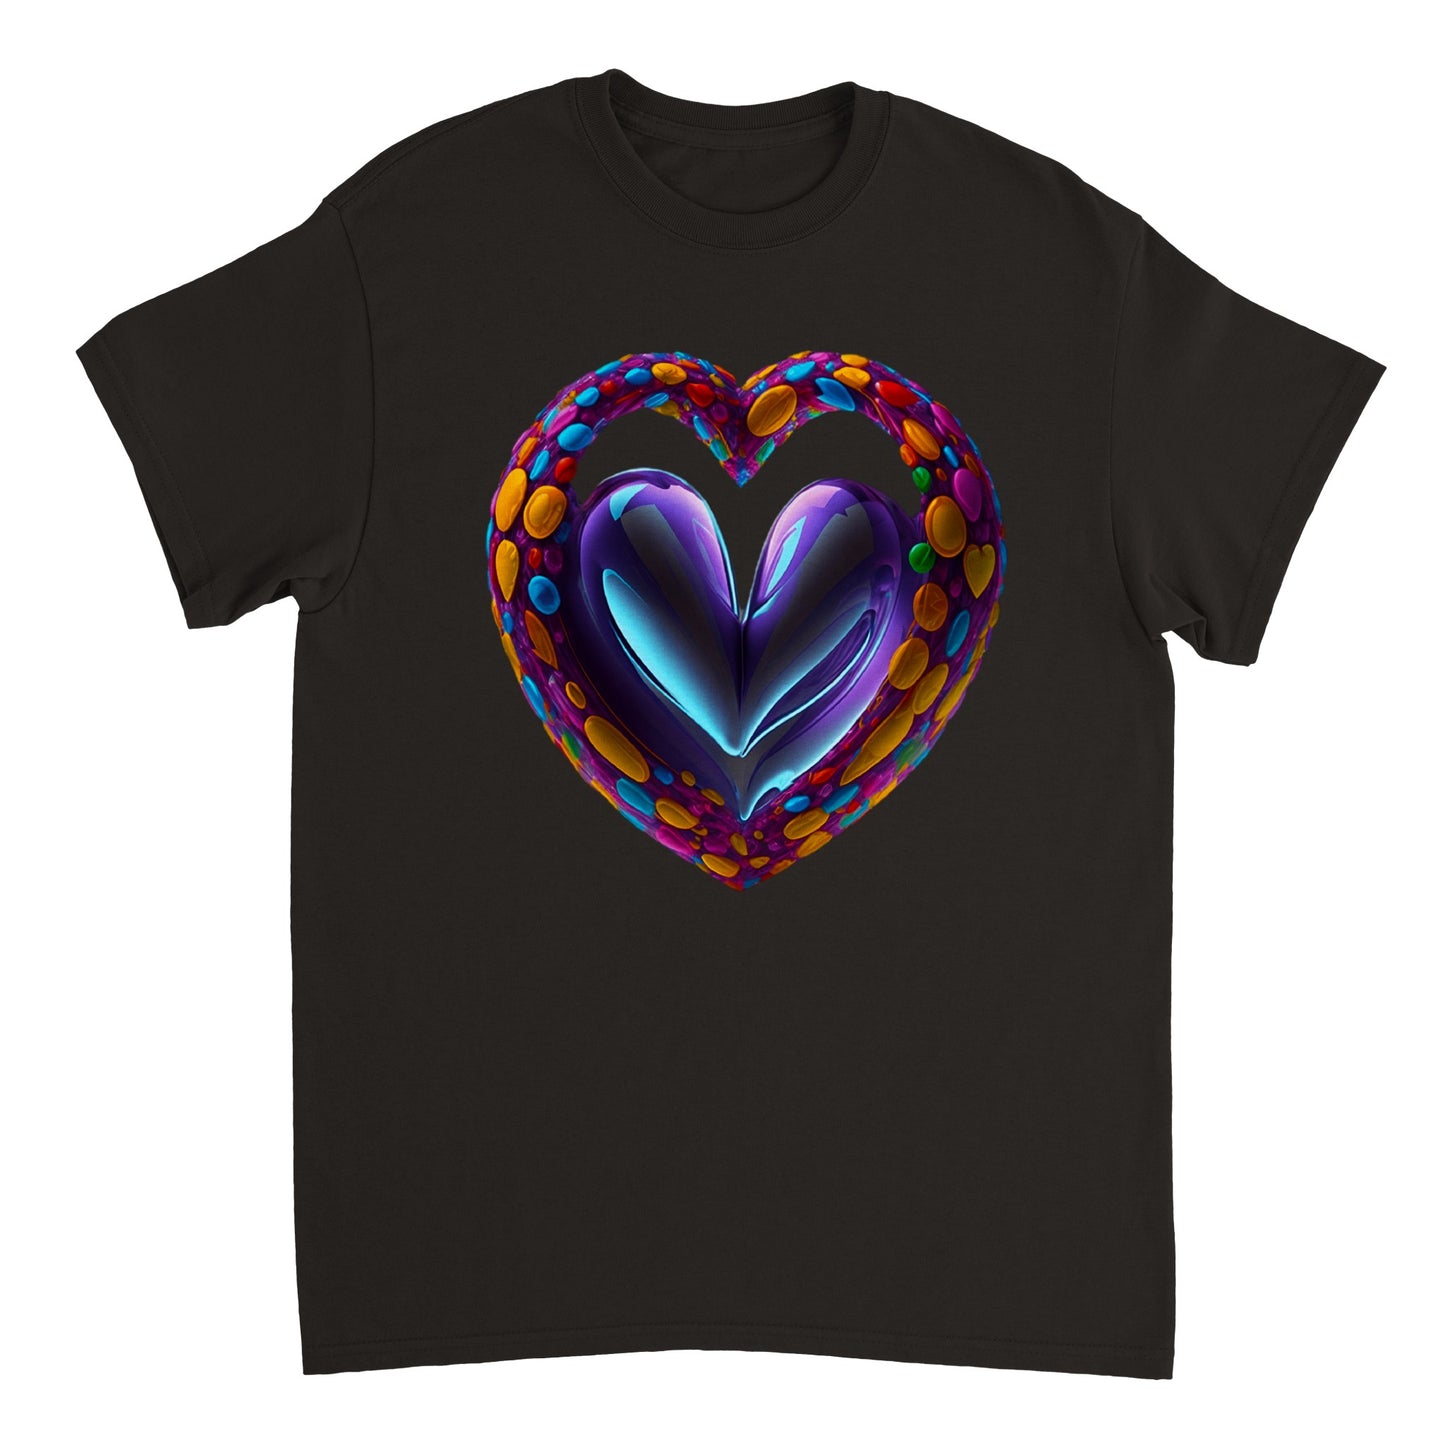 Love Heart - Heavyweight Unisex Crewneck T-shirt 109